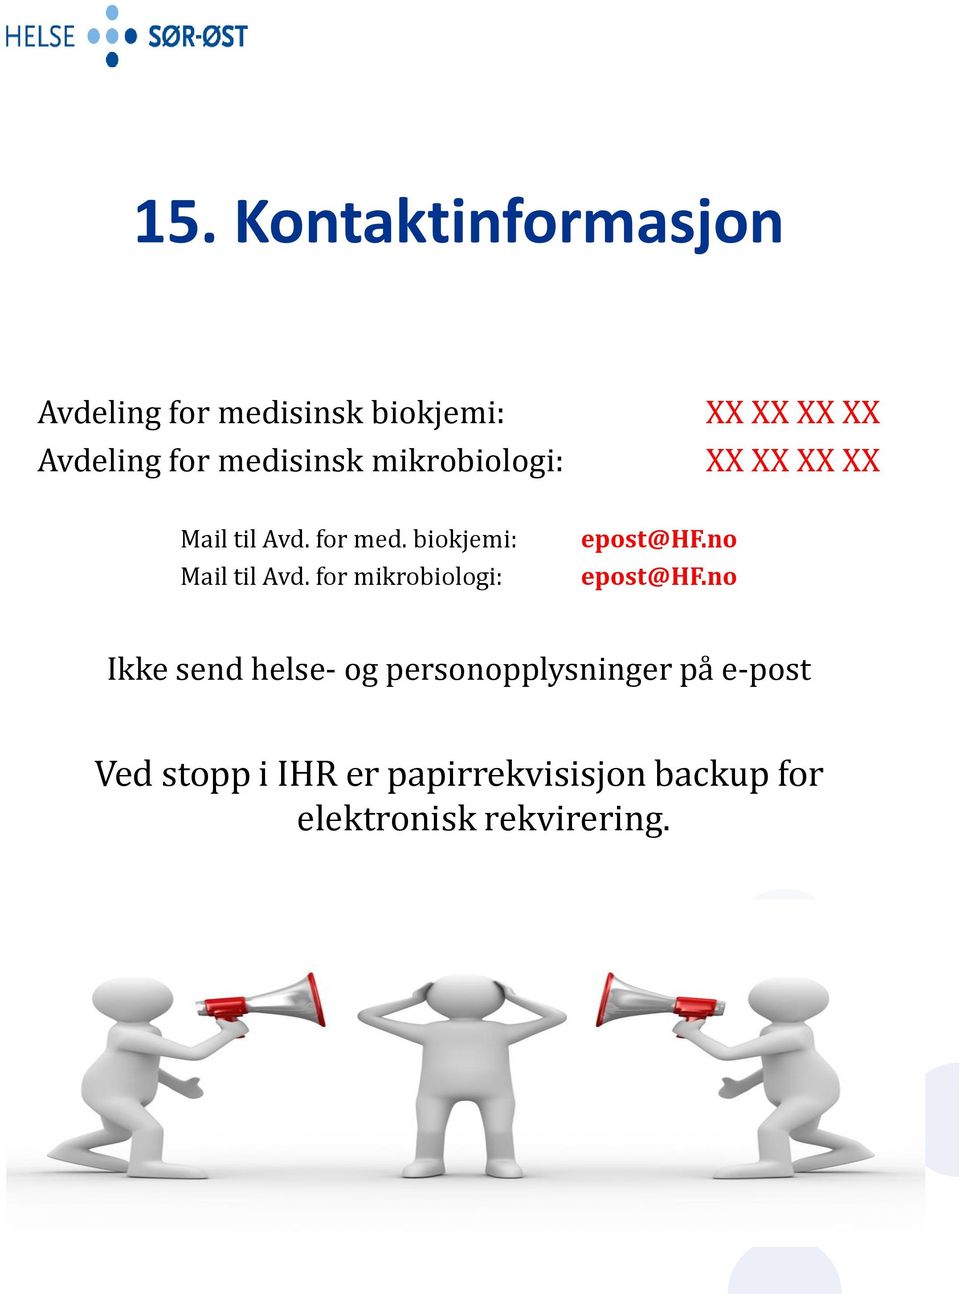 biokjemi: Mail til Avd. for mikrobiologi: epost@hf.no epost@hf.